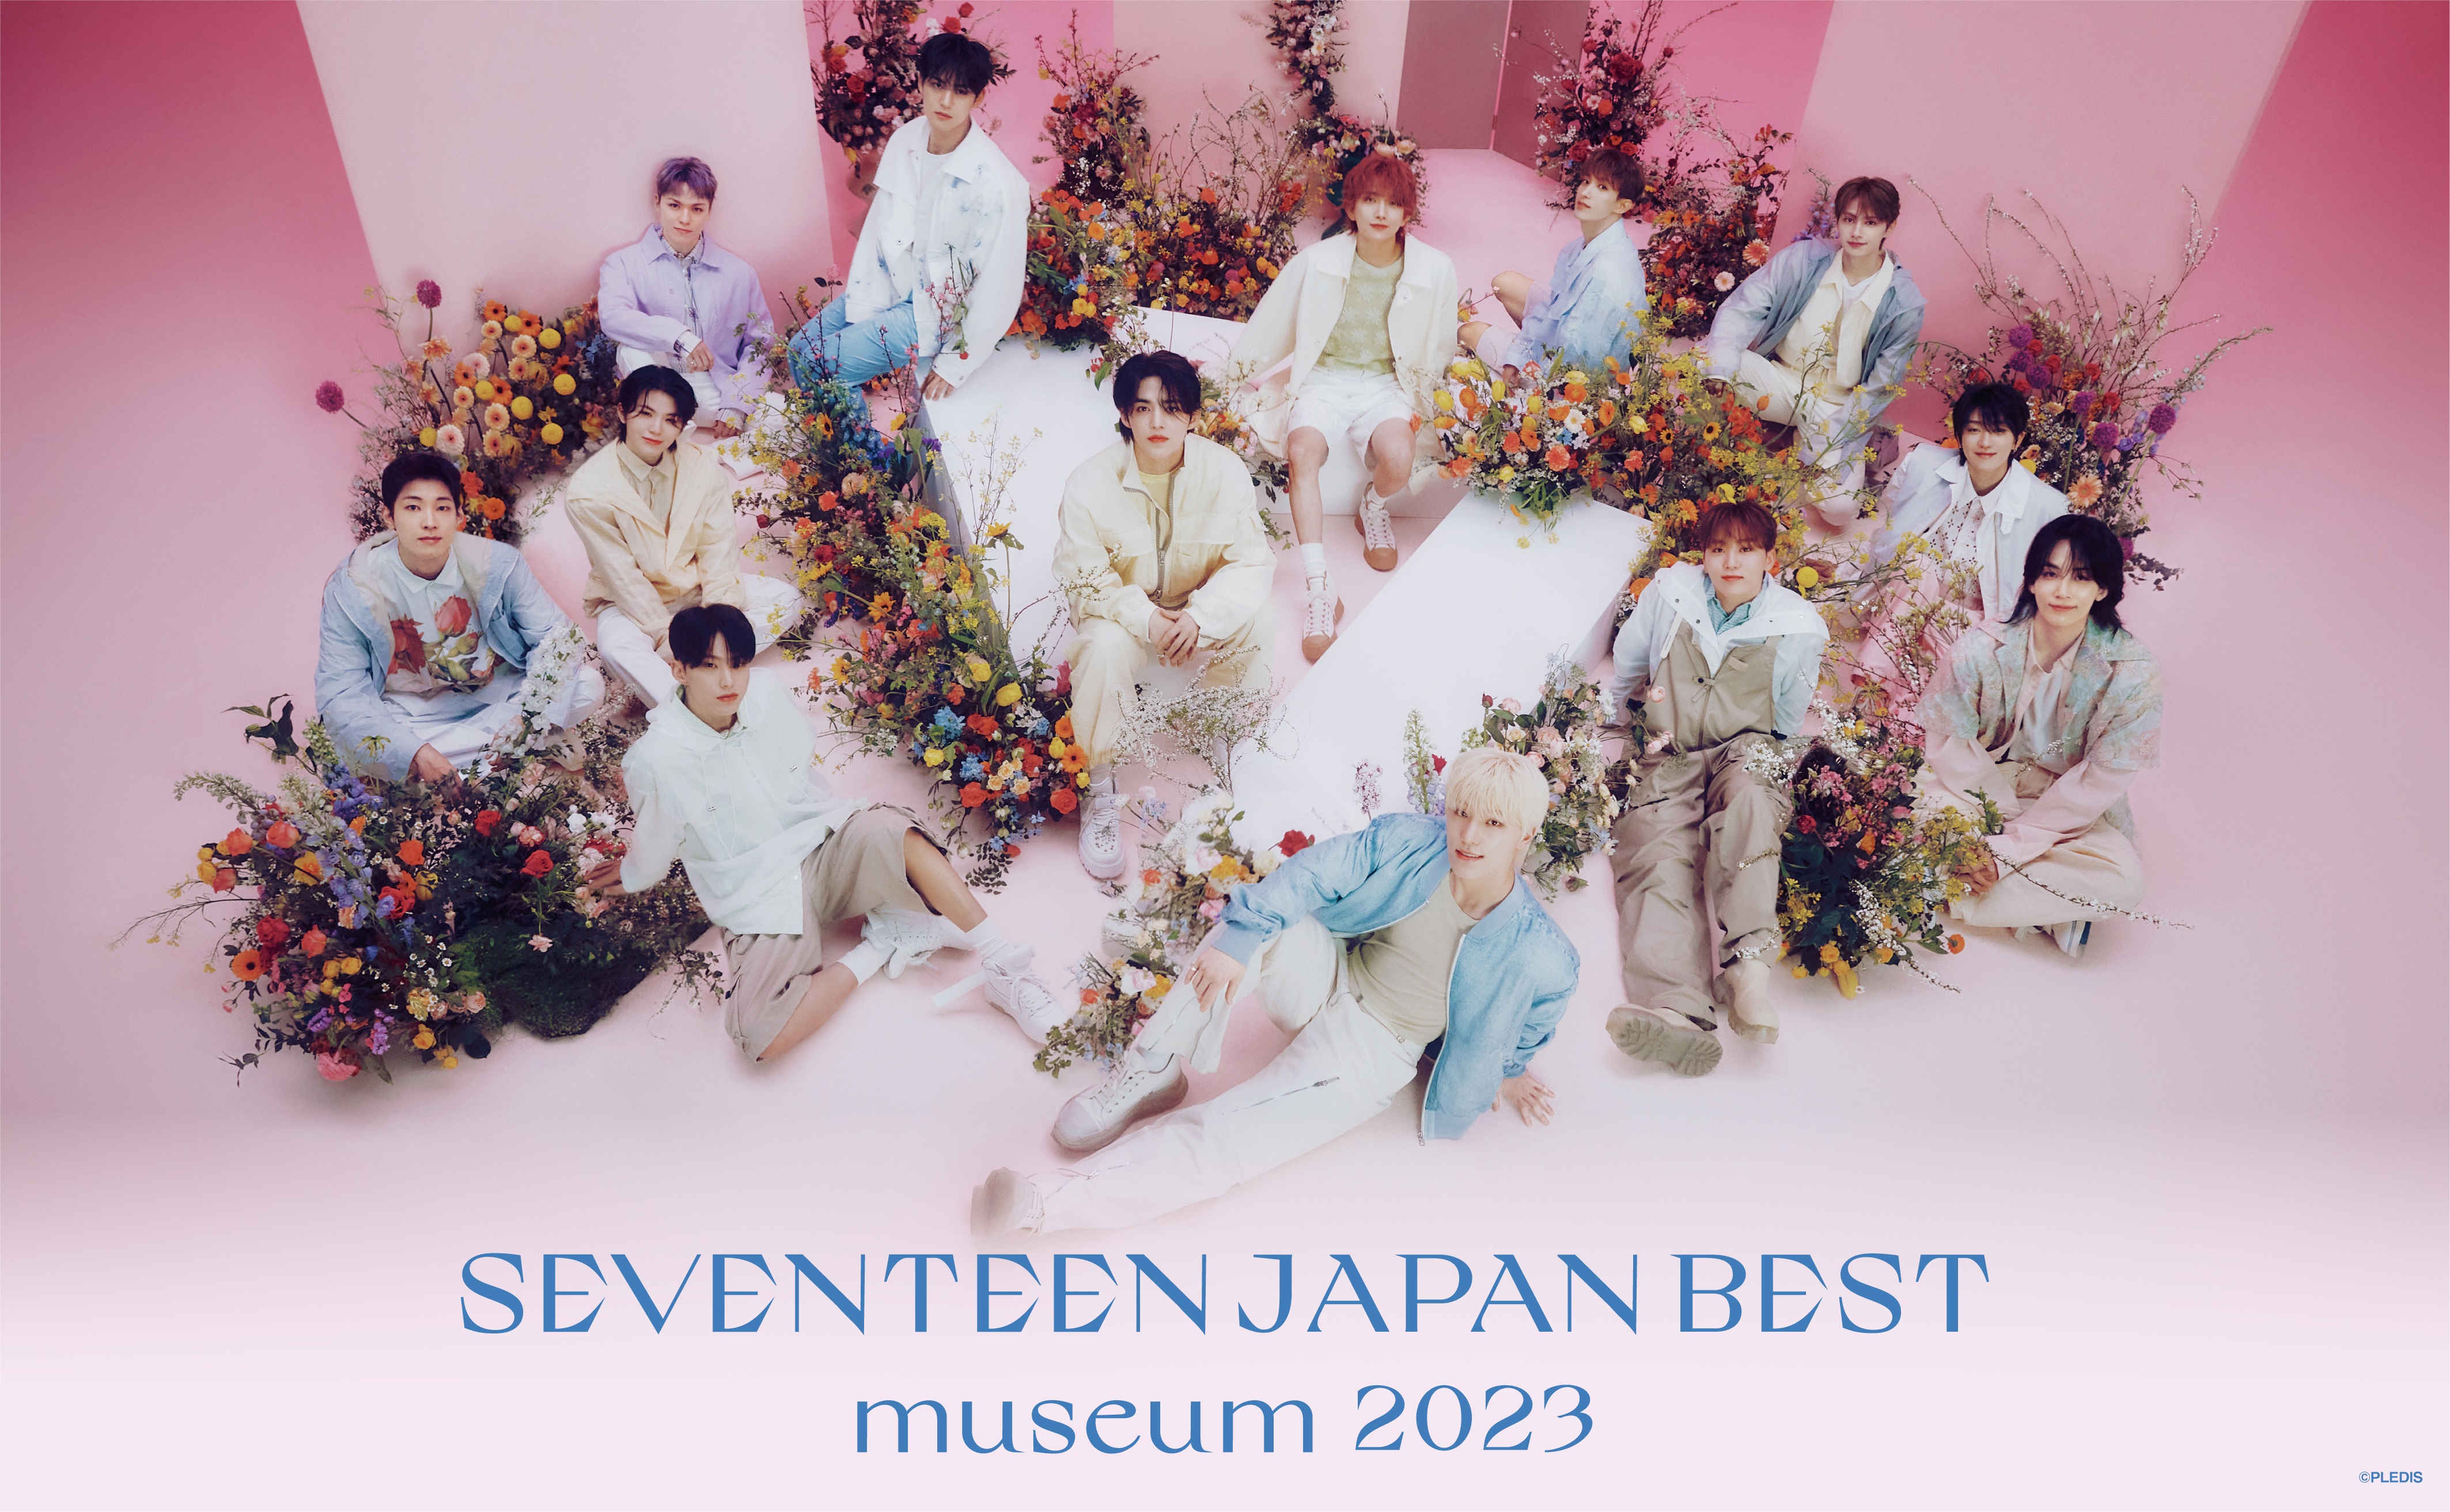 13人組グループ「SEVENTEEN」日本ベストアルバム発売記念の企画展